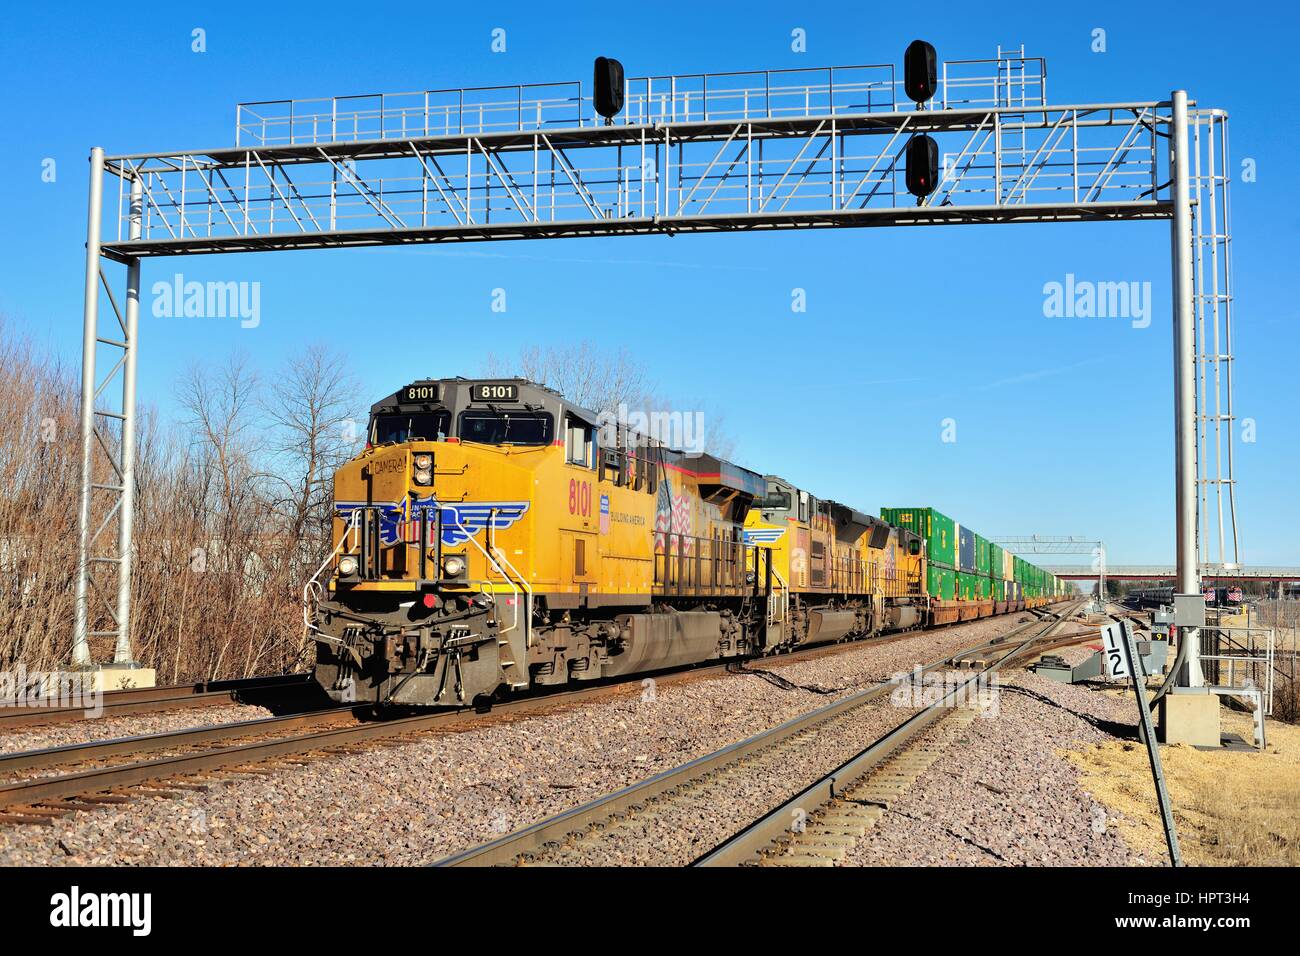 Durch drei Lokomotive Einheiten führen, eine Richtung Westen Union Pacific unit train von containerisierte Fracht aus Chicago. Elburn, Illinois, USA. Stockfoto